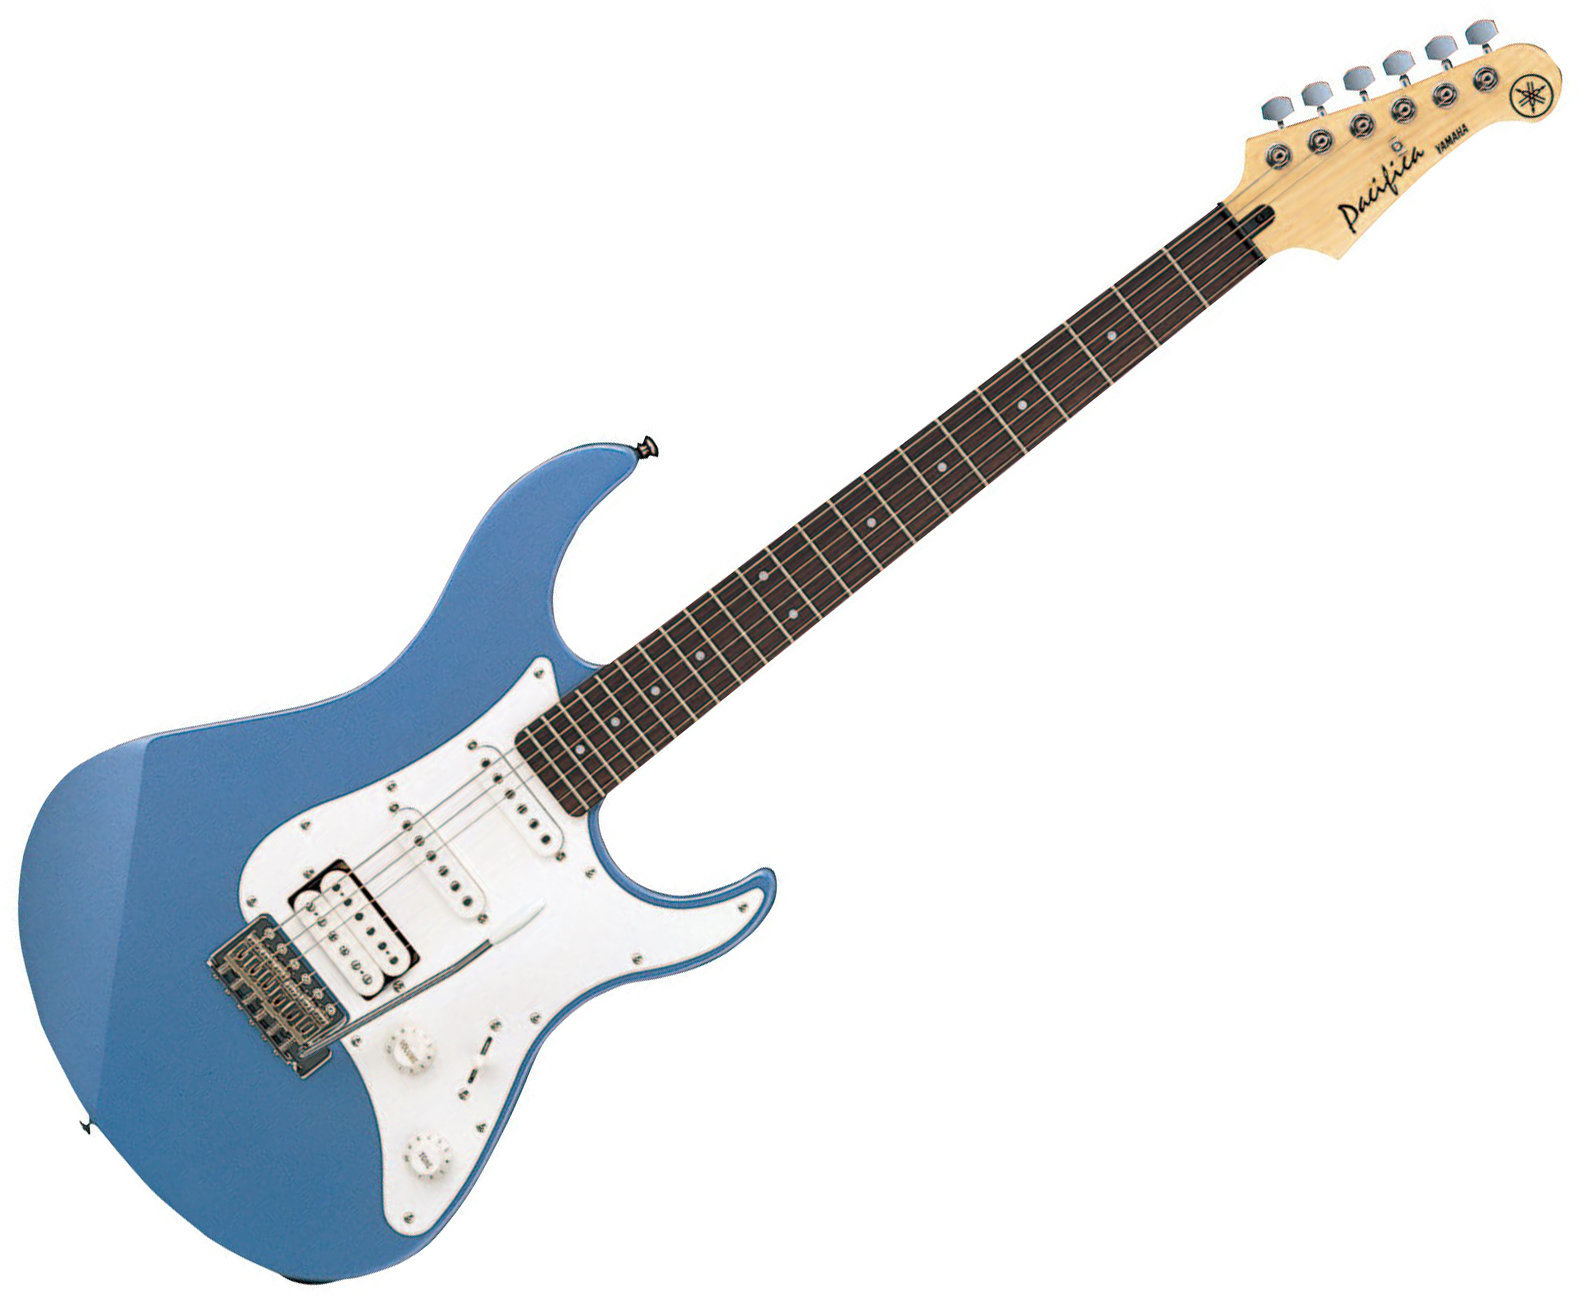 Električna gitara Yamaha Pacifica 112 J Lake Placid Blue